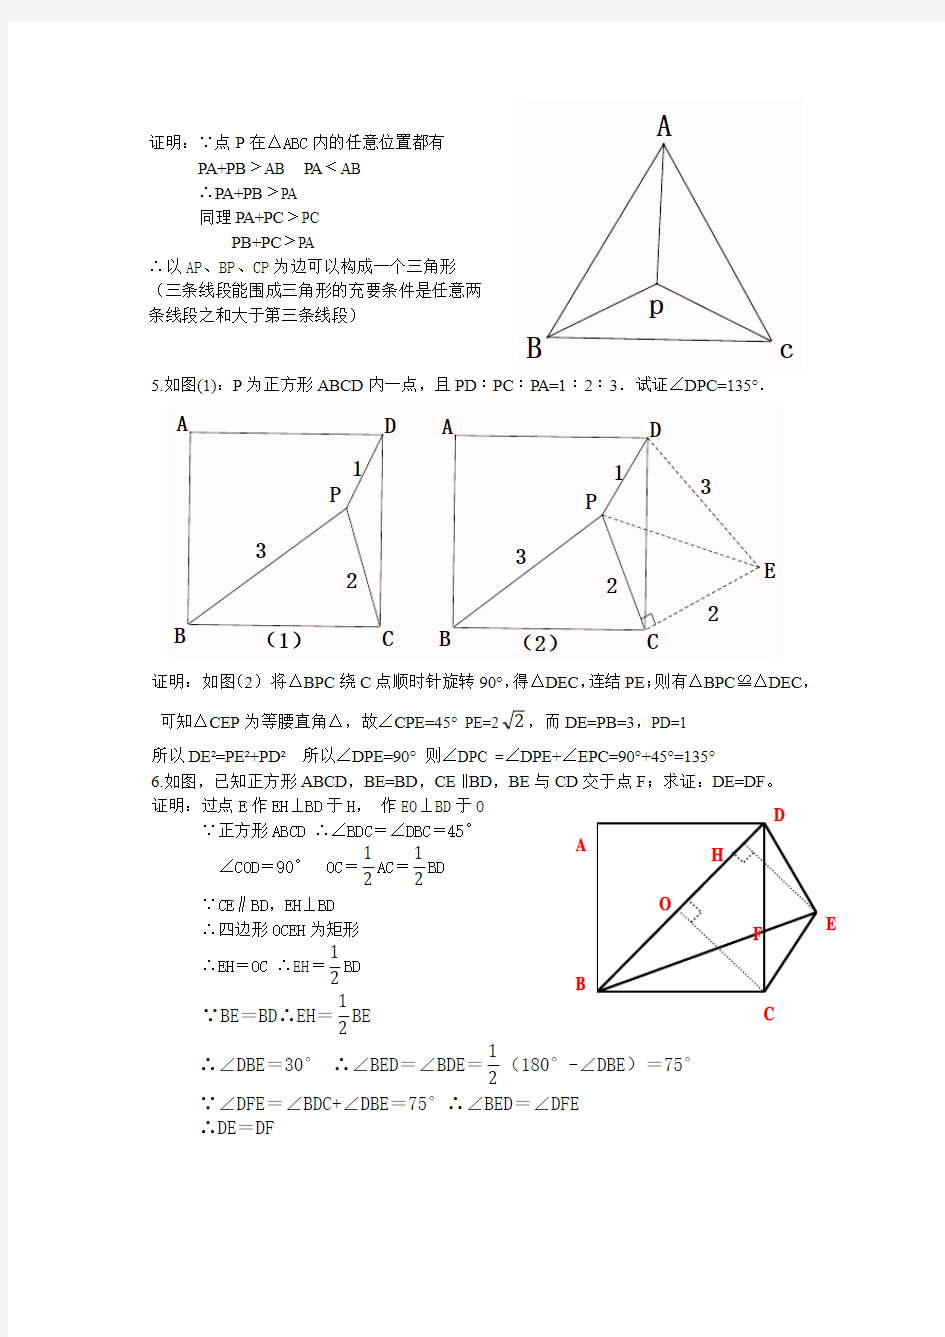 几道有关等边三角形、正方形的证明计算题